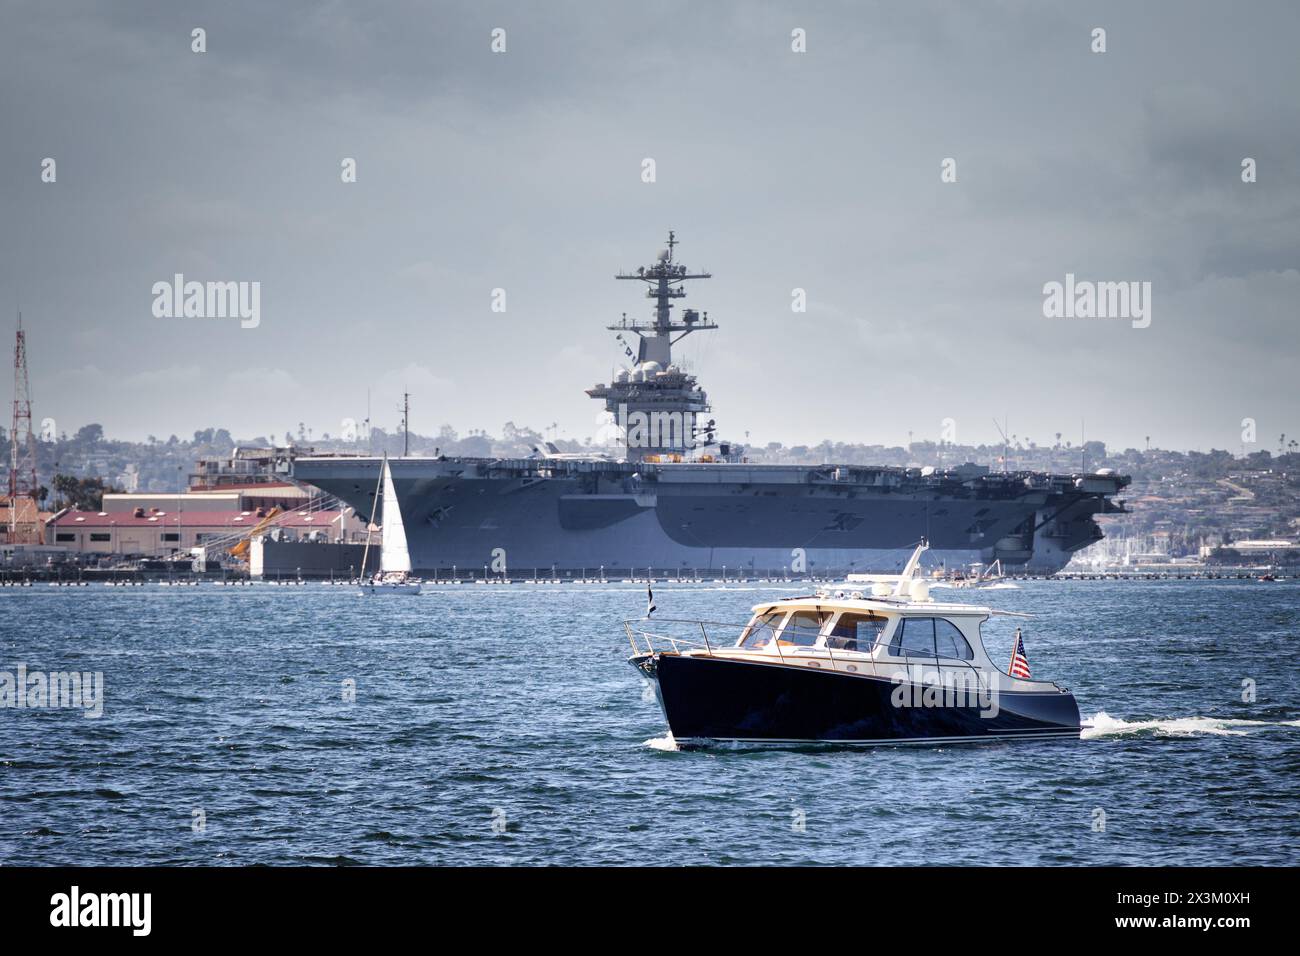 Un bateau sur l'eau, avec un porte-avions de l'US Navy en arrière-plan, dans la baie de San Diego au large de la côte de Coronado, en Californie. Banque D'Images